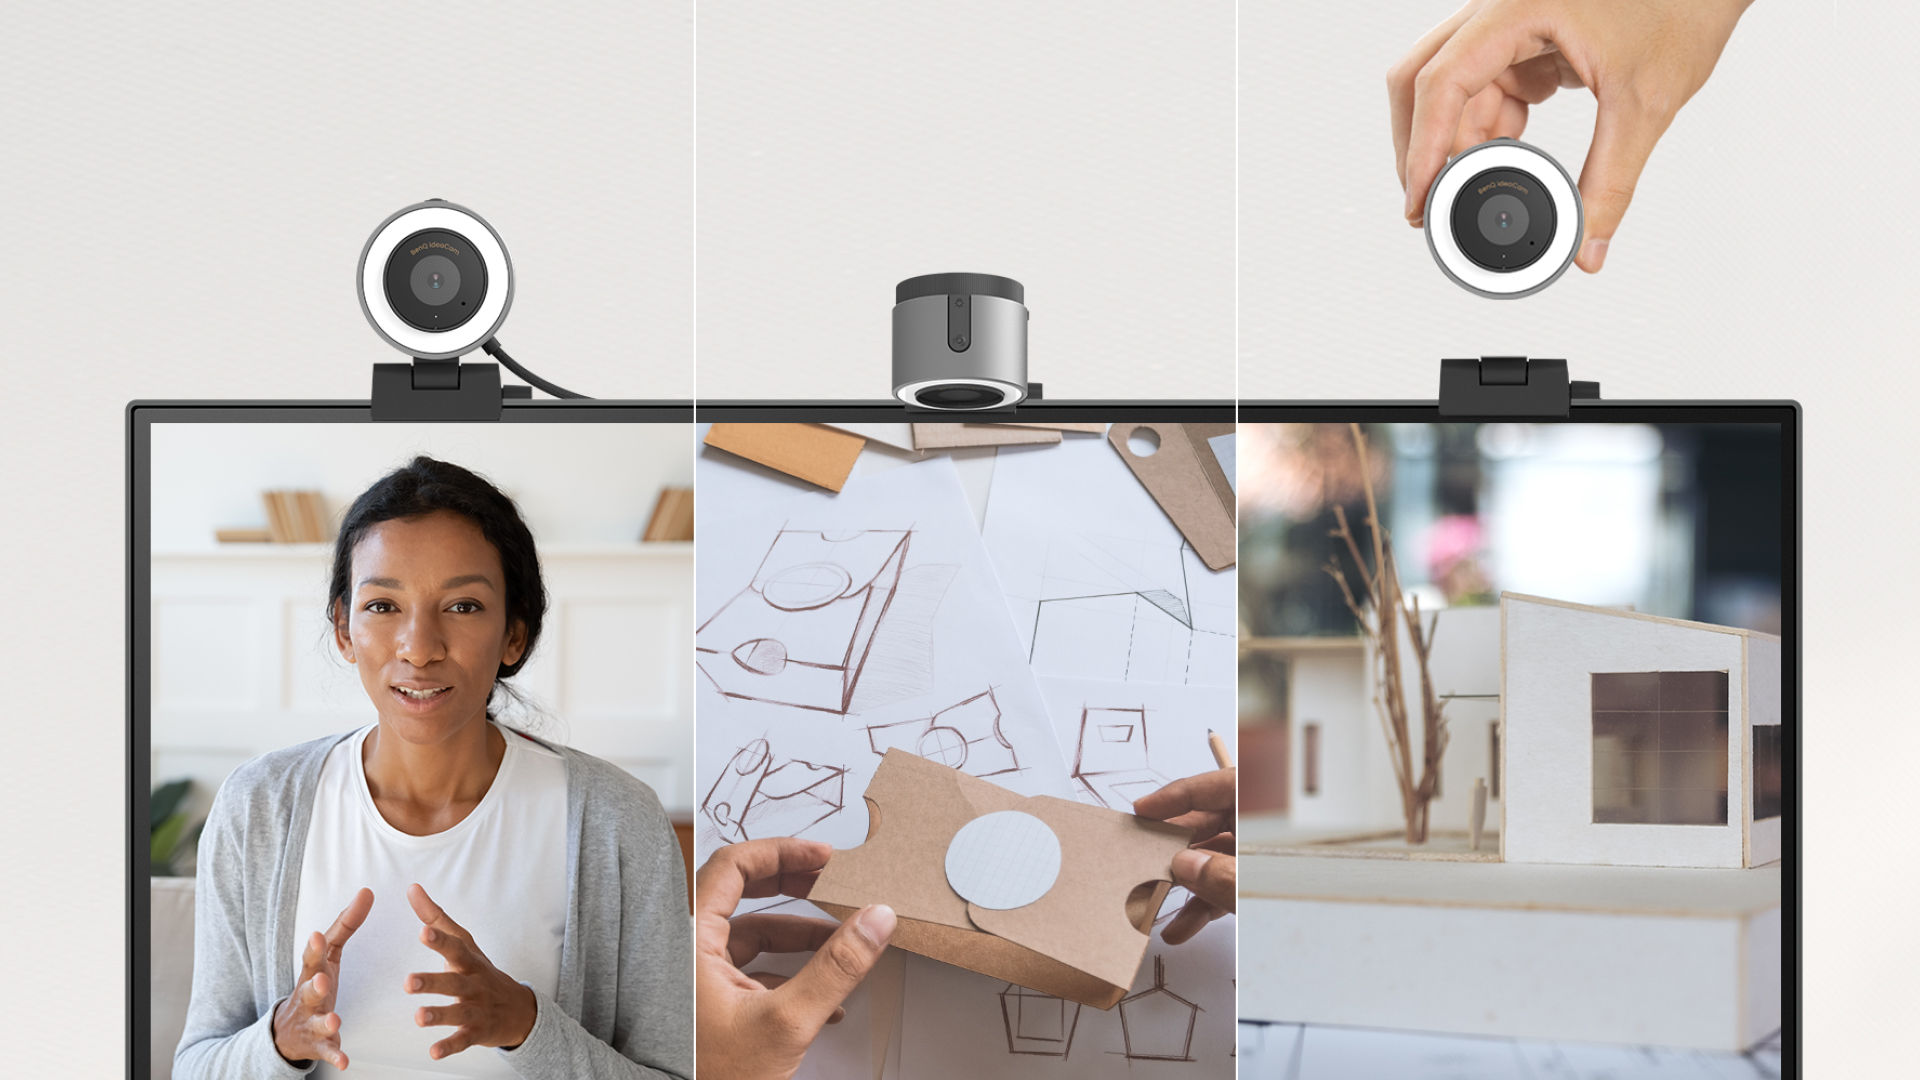 4K webcam switch to document camera.Video camera with auto-rotation & autofocus